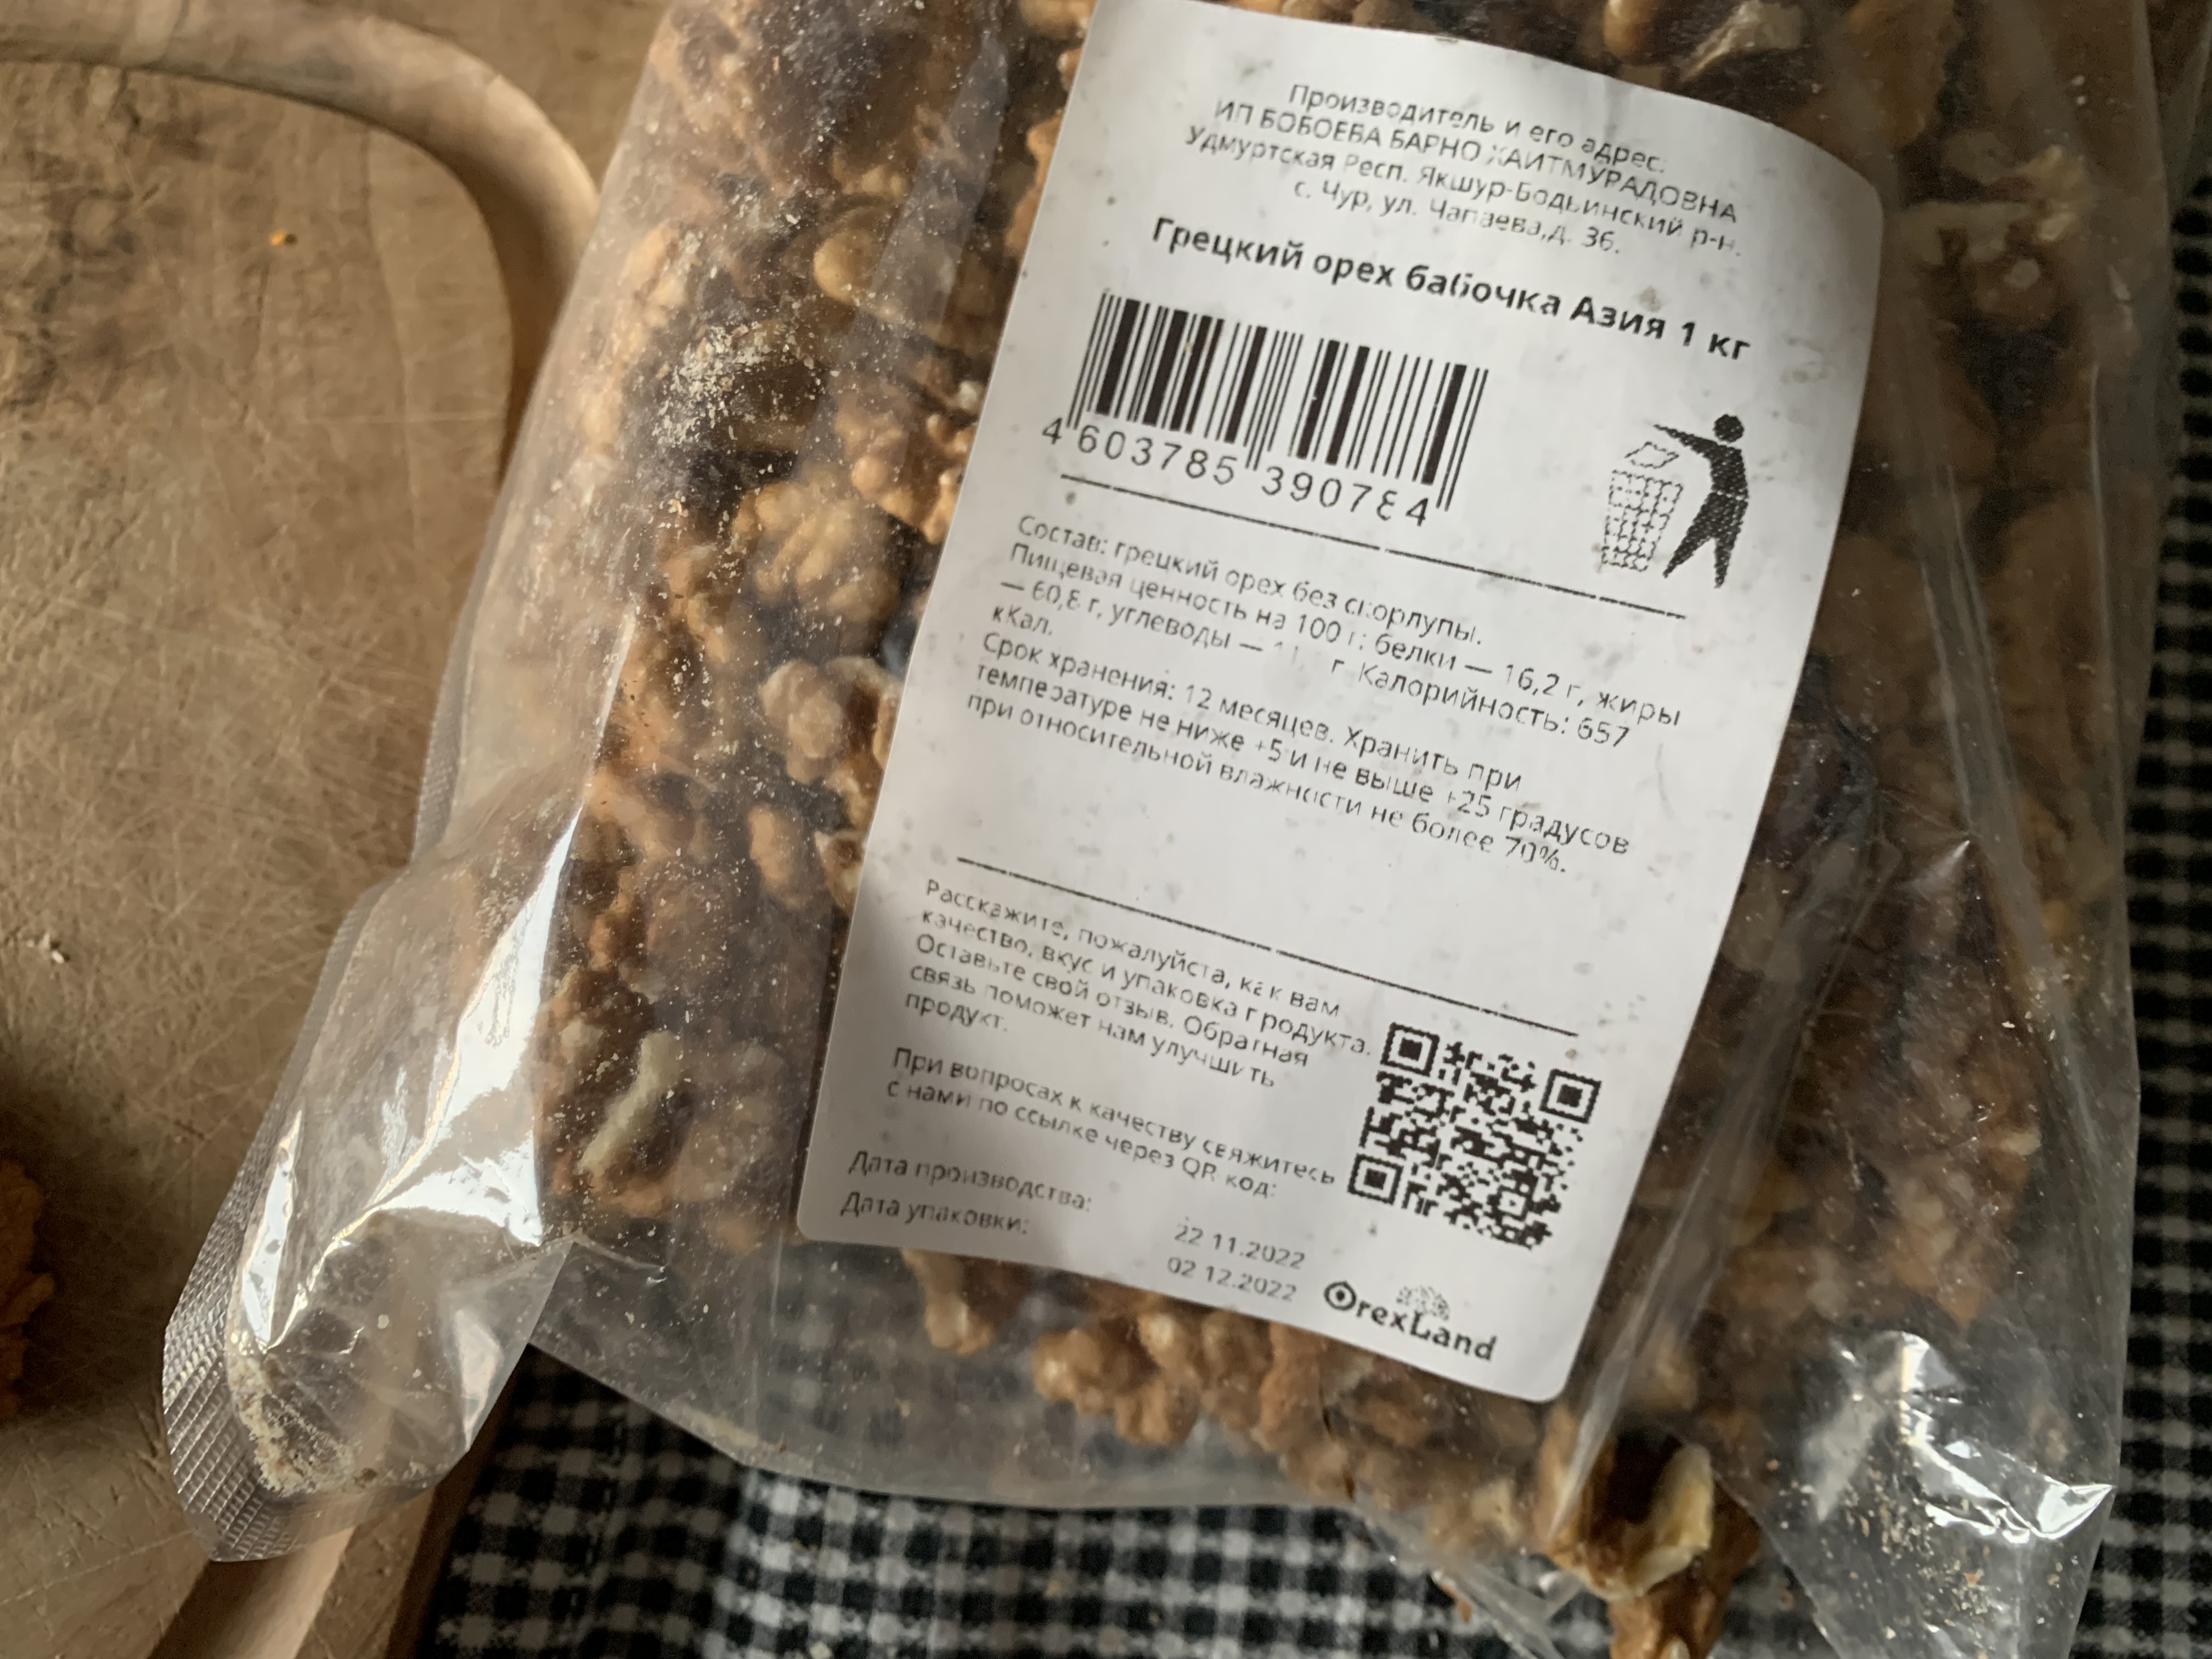 Грецкий орех Orexland бабочка Азия, 1 кг - отзывы покупателей на Мегамаркет